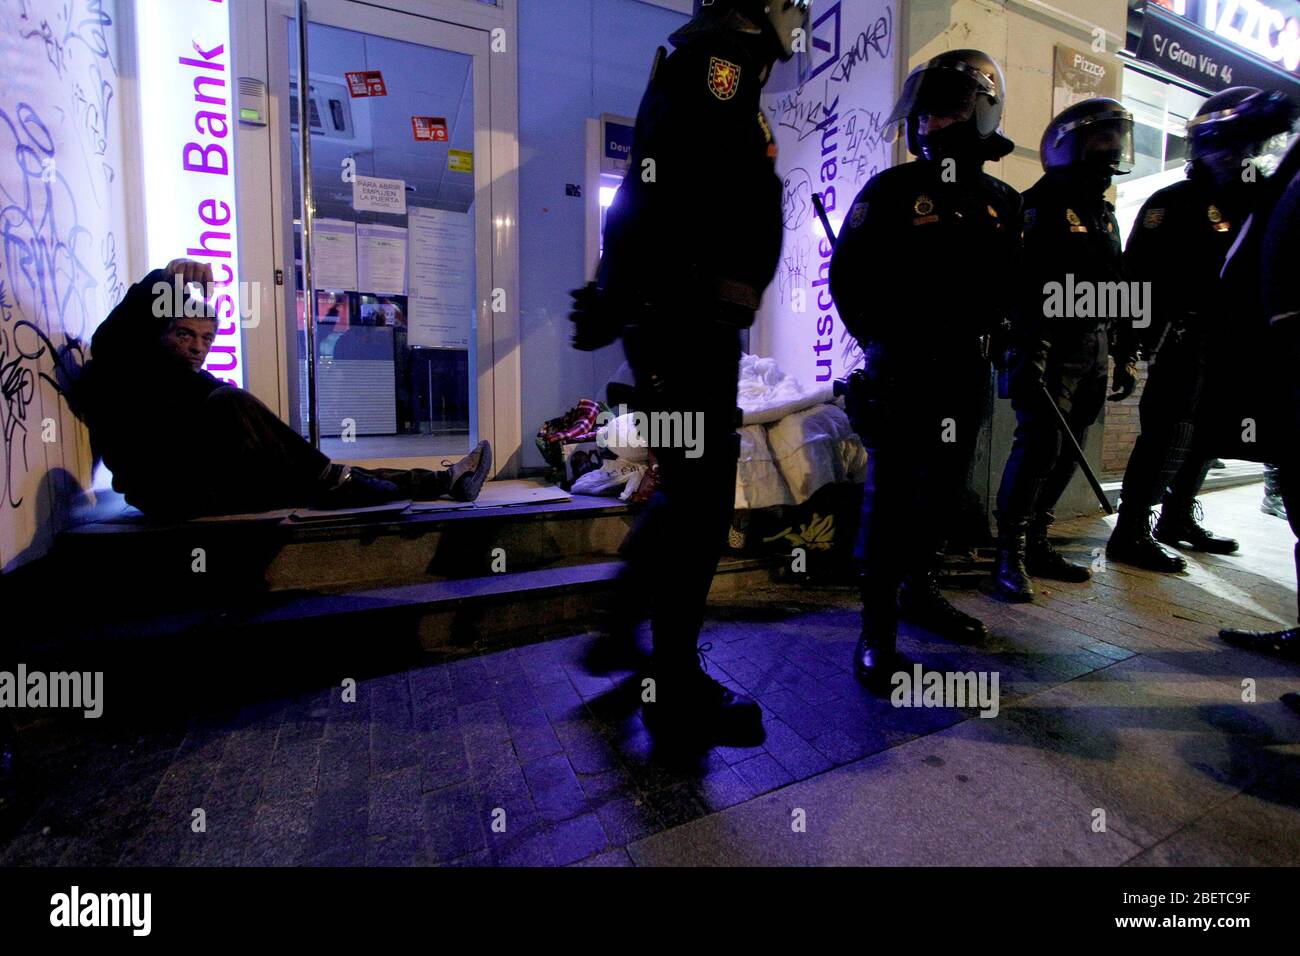 Europäischer Generalstreik.EIN Obdachloser schläft an der Tür eines Bankbüros, umgeben von vielen Mitgliedern der Nationalen Polizei.November 14,2012. (ALTERP Stockfoto